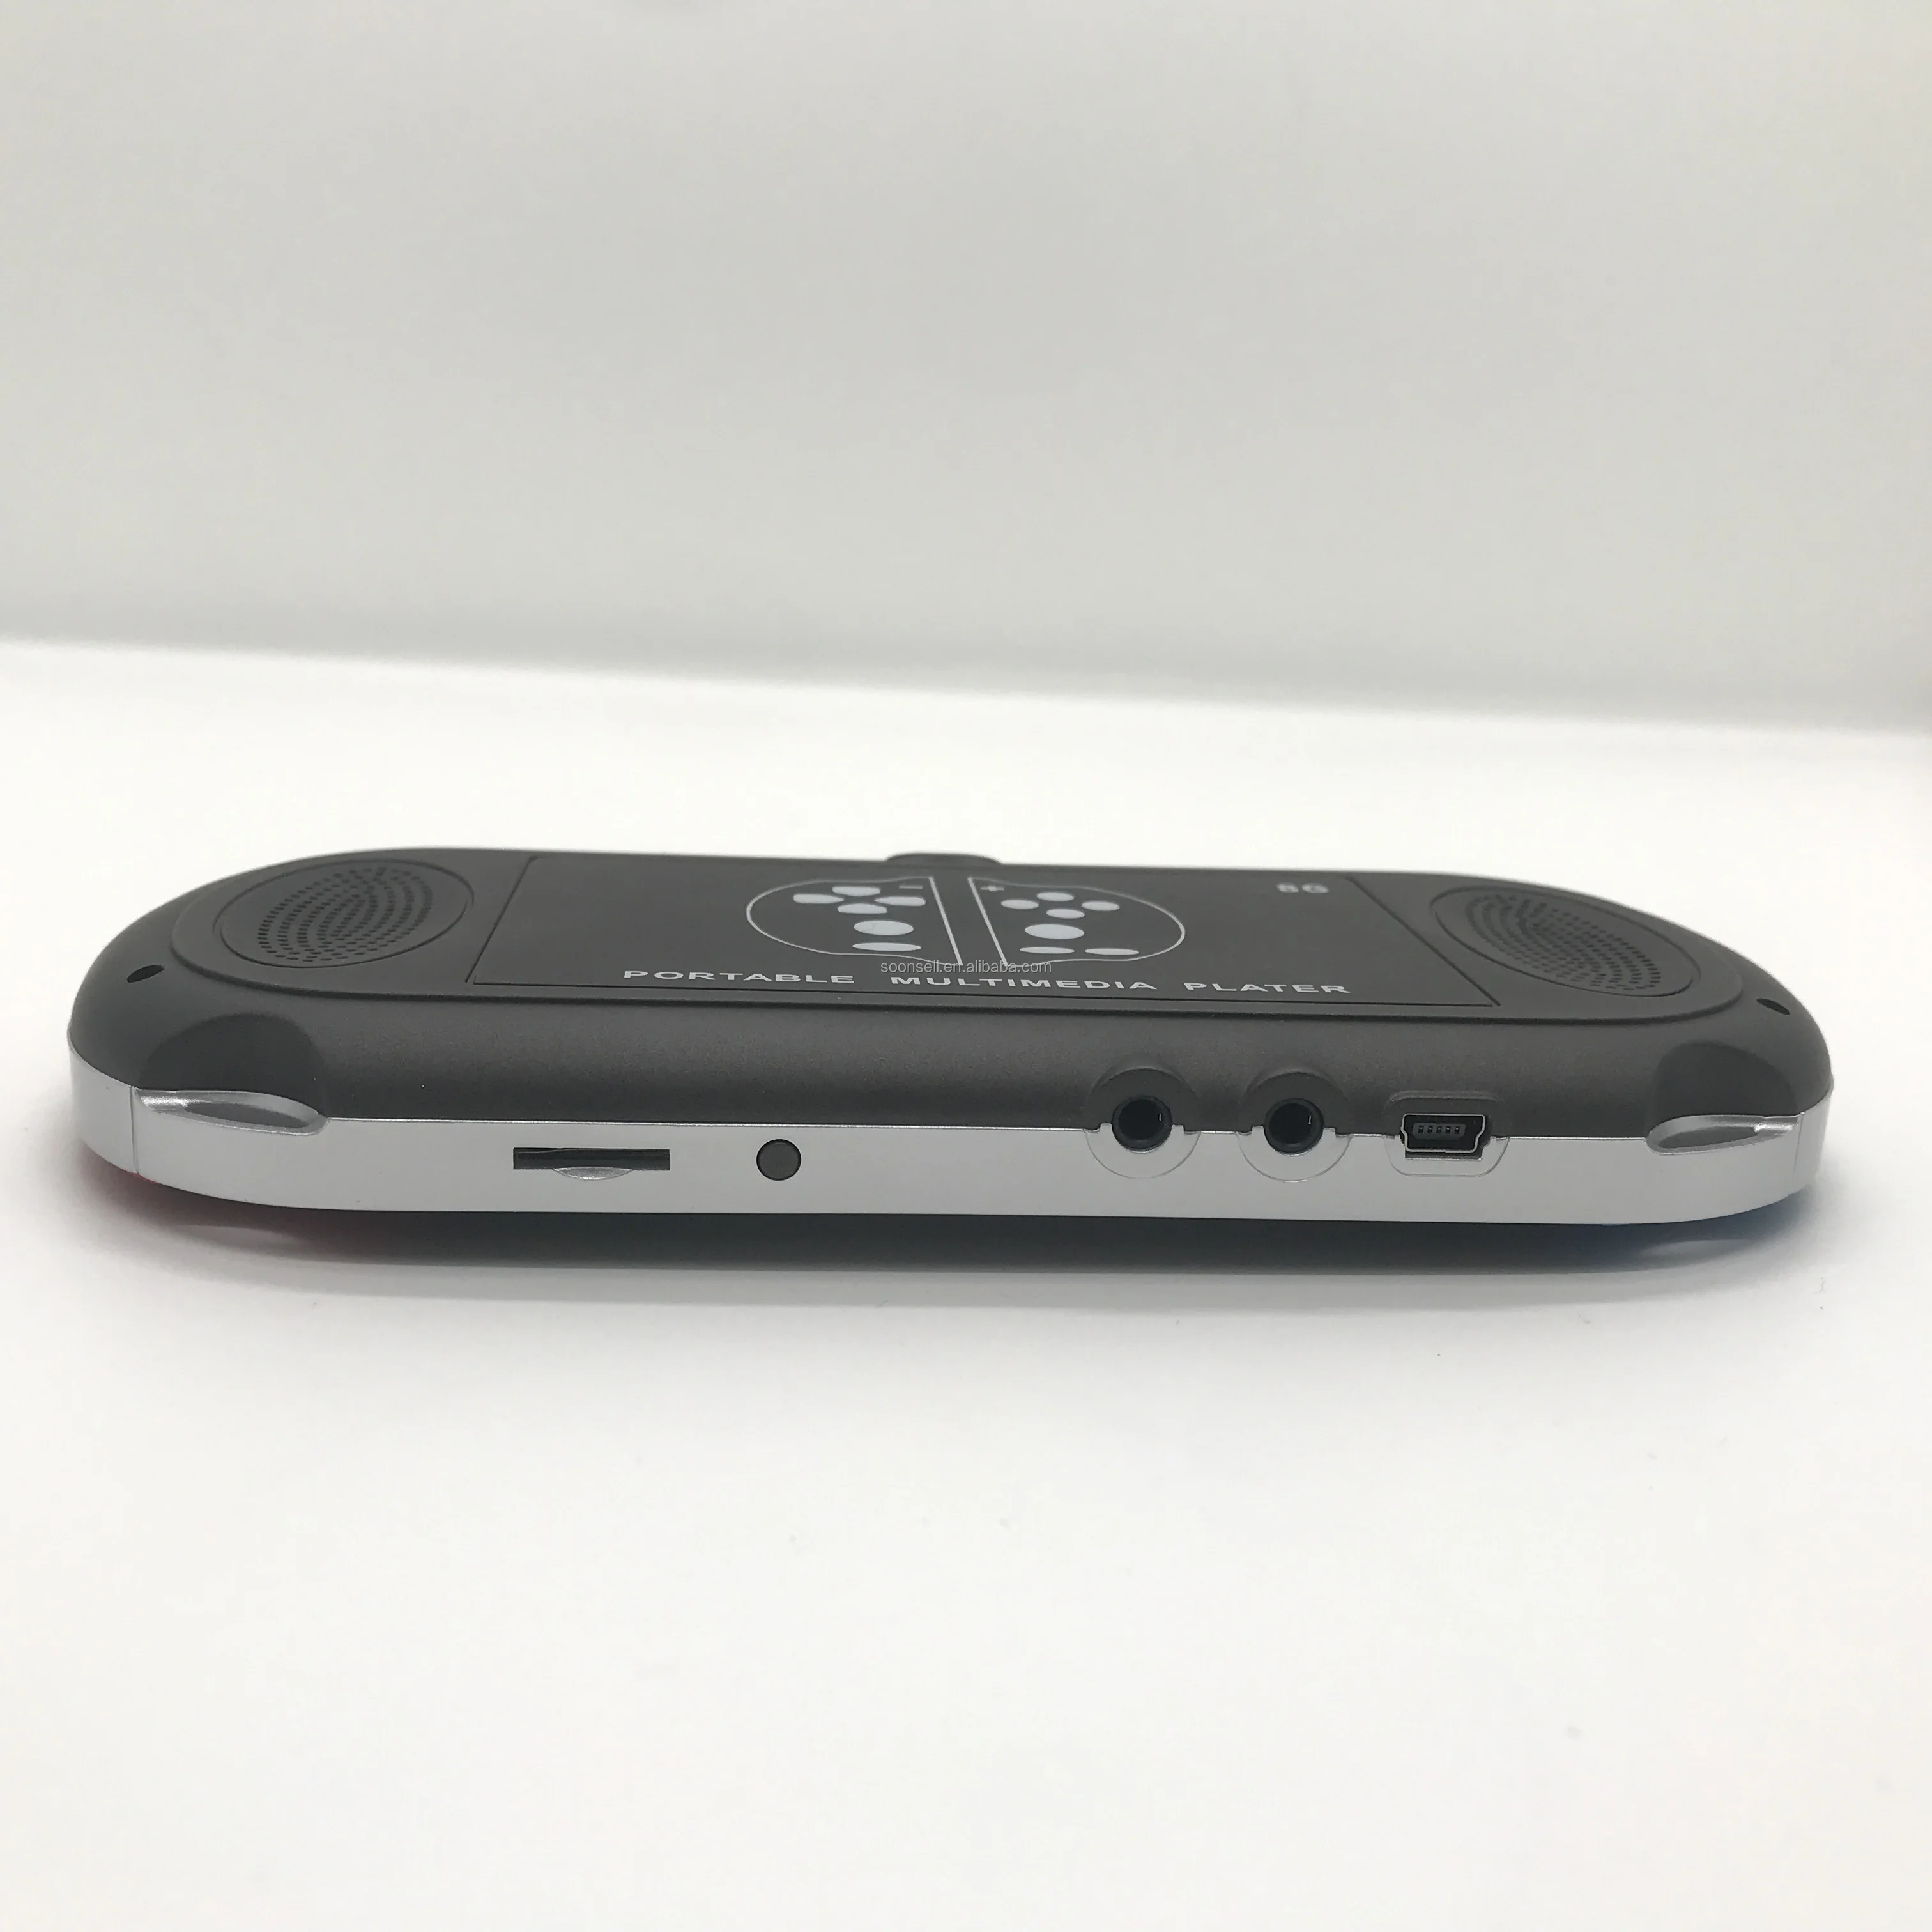 Console de jeu vidéo rétro portable MP5 X7, écran couleur HD de 4.3 pouces, Mini TV